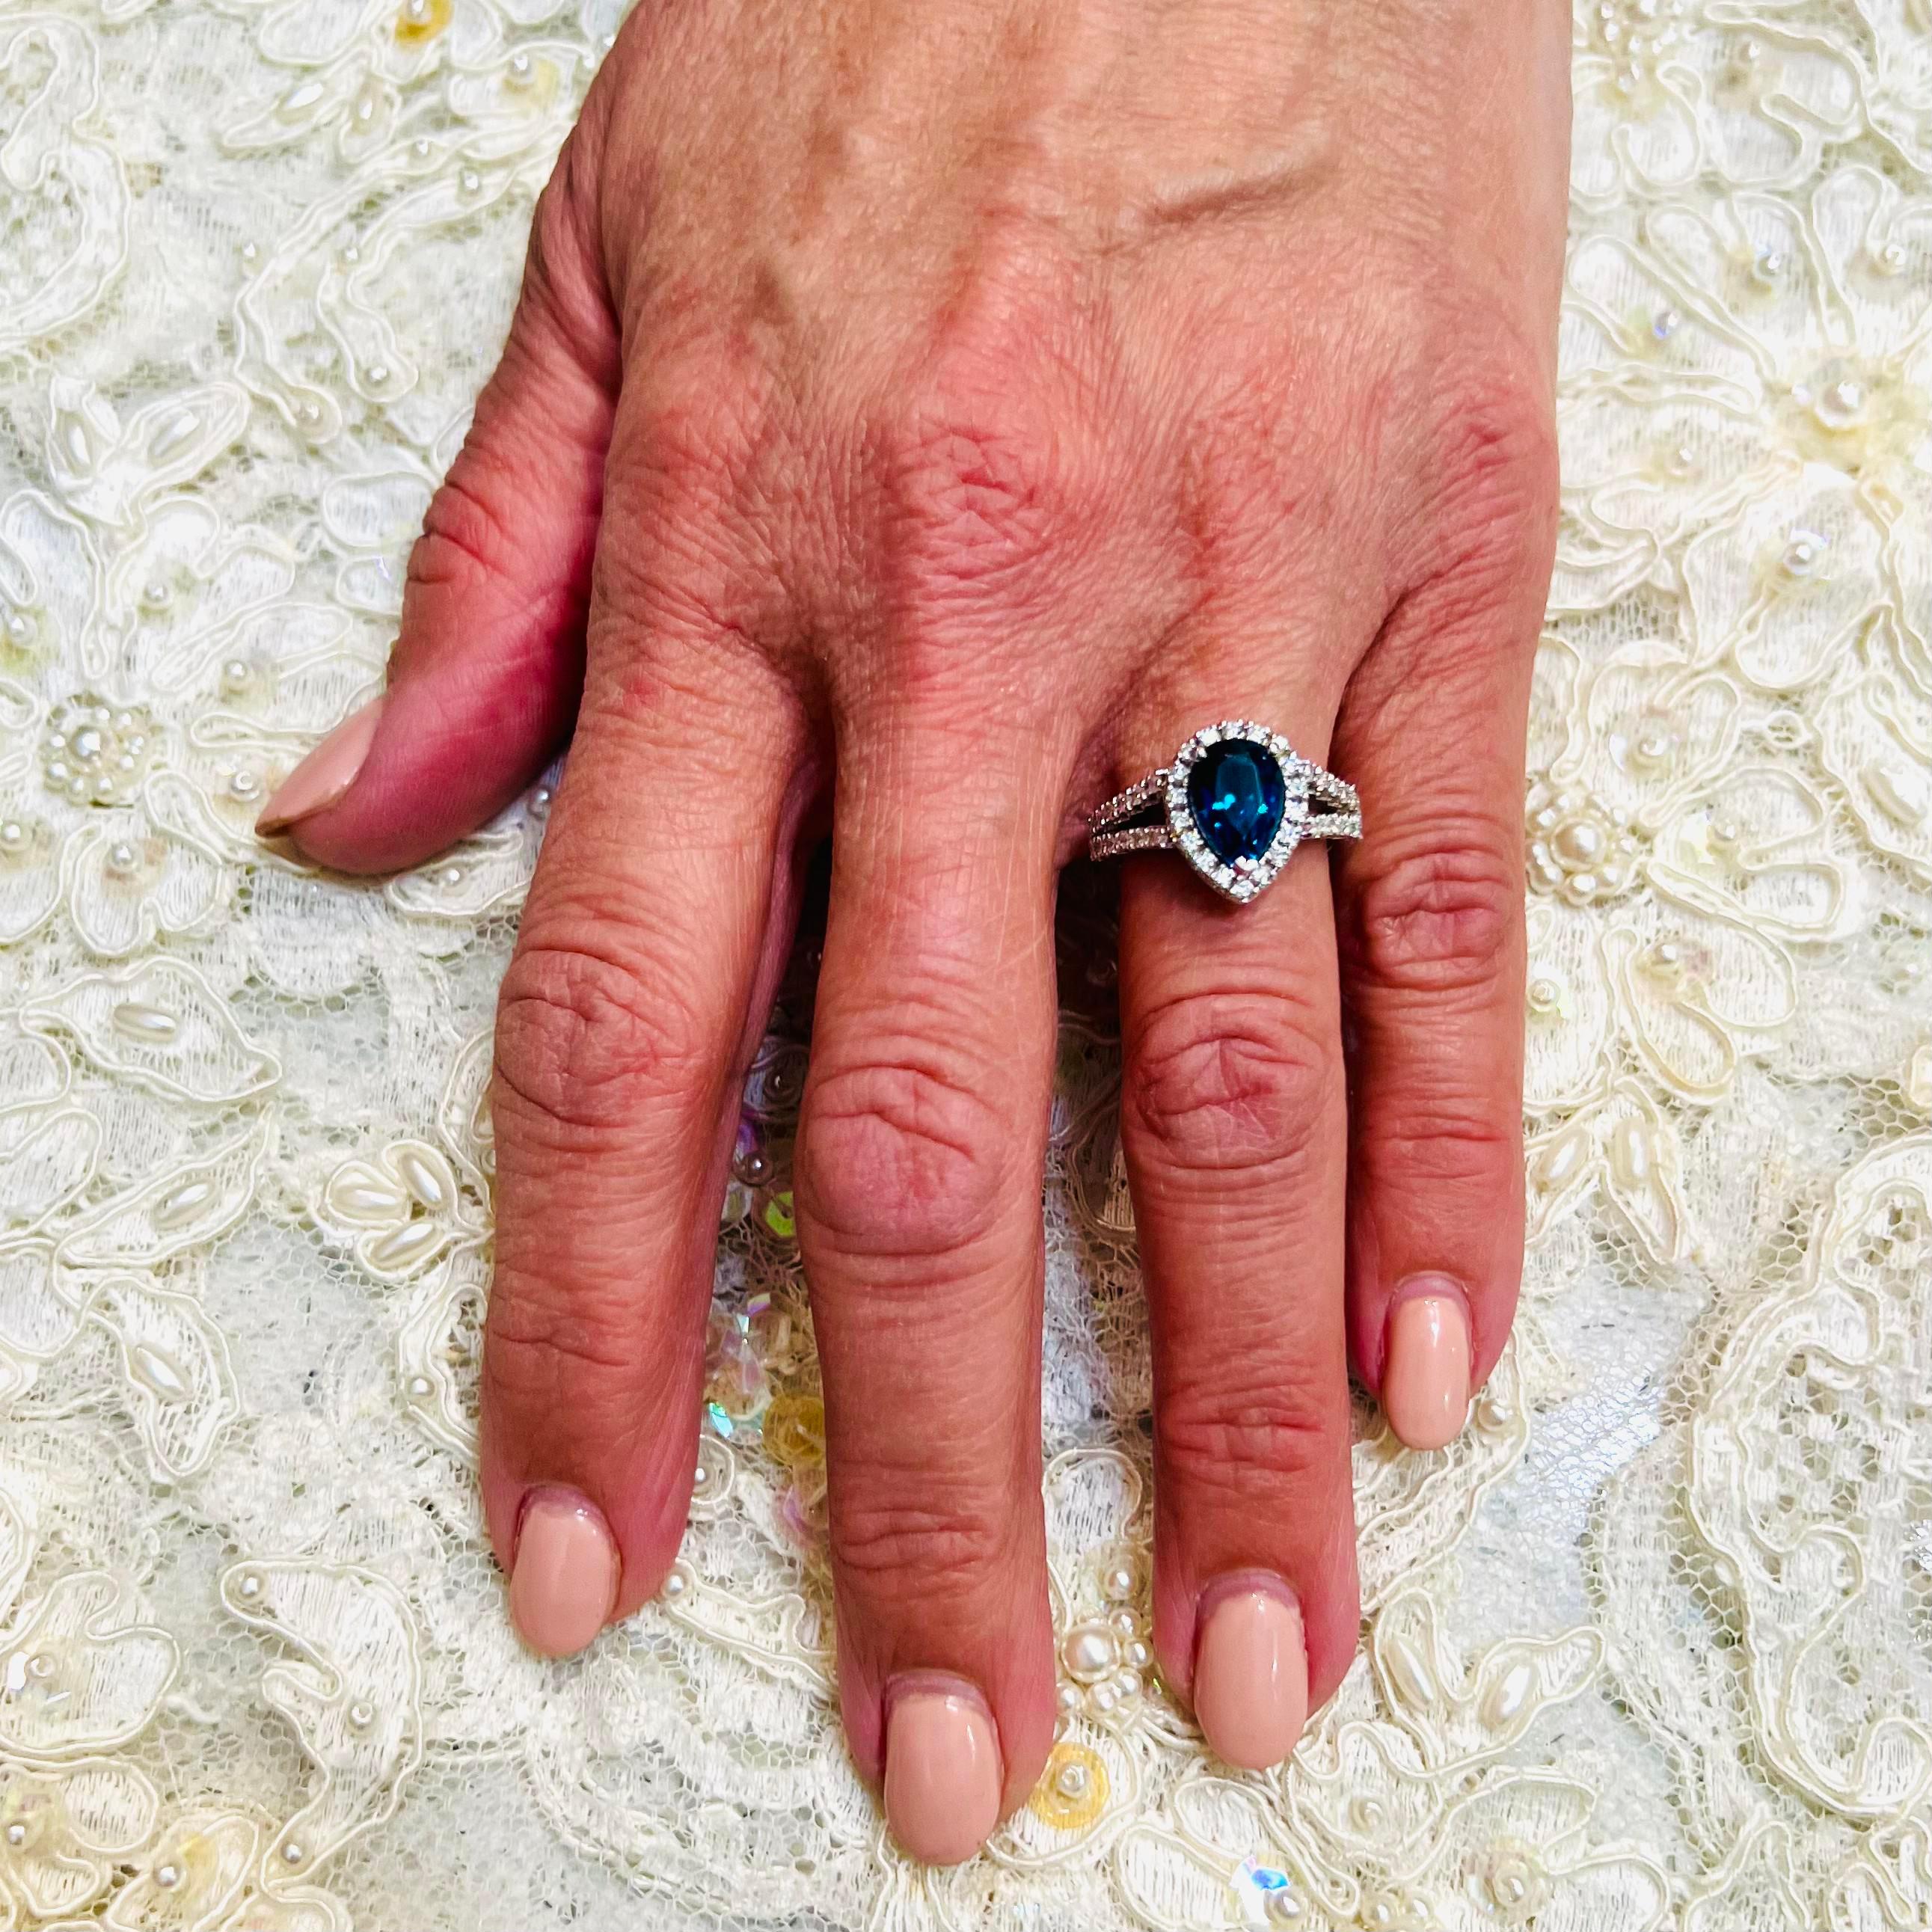 Natürlicher blauer Topas Diamant Ring Größe 6,5 14k W Gold 3,77 TCW zertifiziert $3.950 300213

Dies ist ein einzigartiges, maßgeschneidertes, glamouröses Schmuckstück!

Nichts sagt mehr 